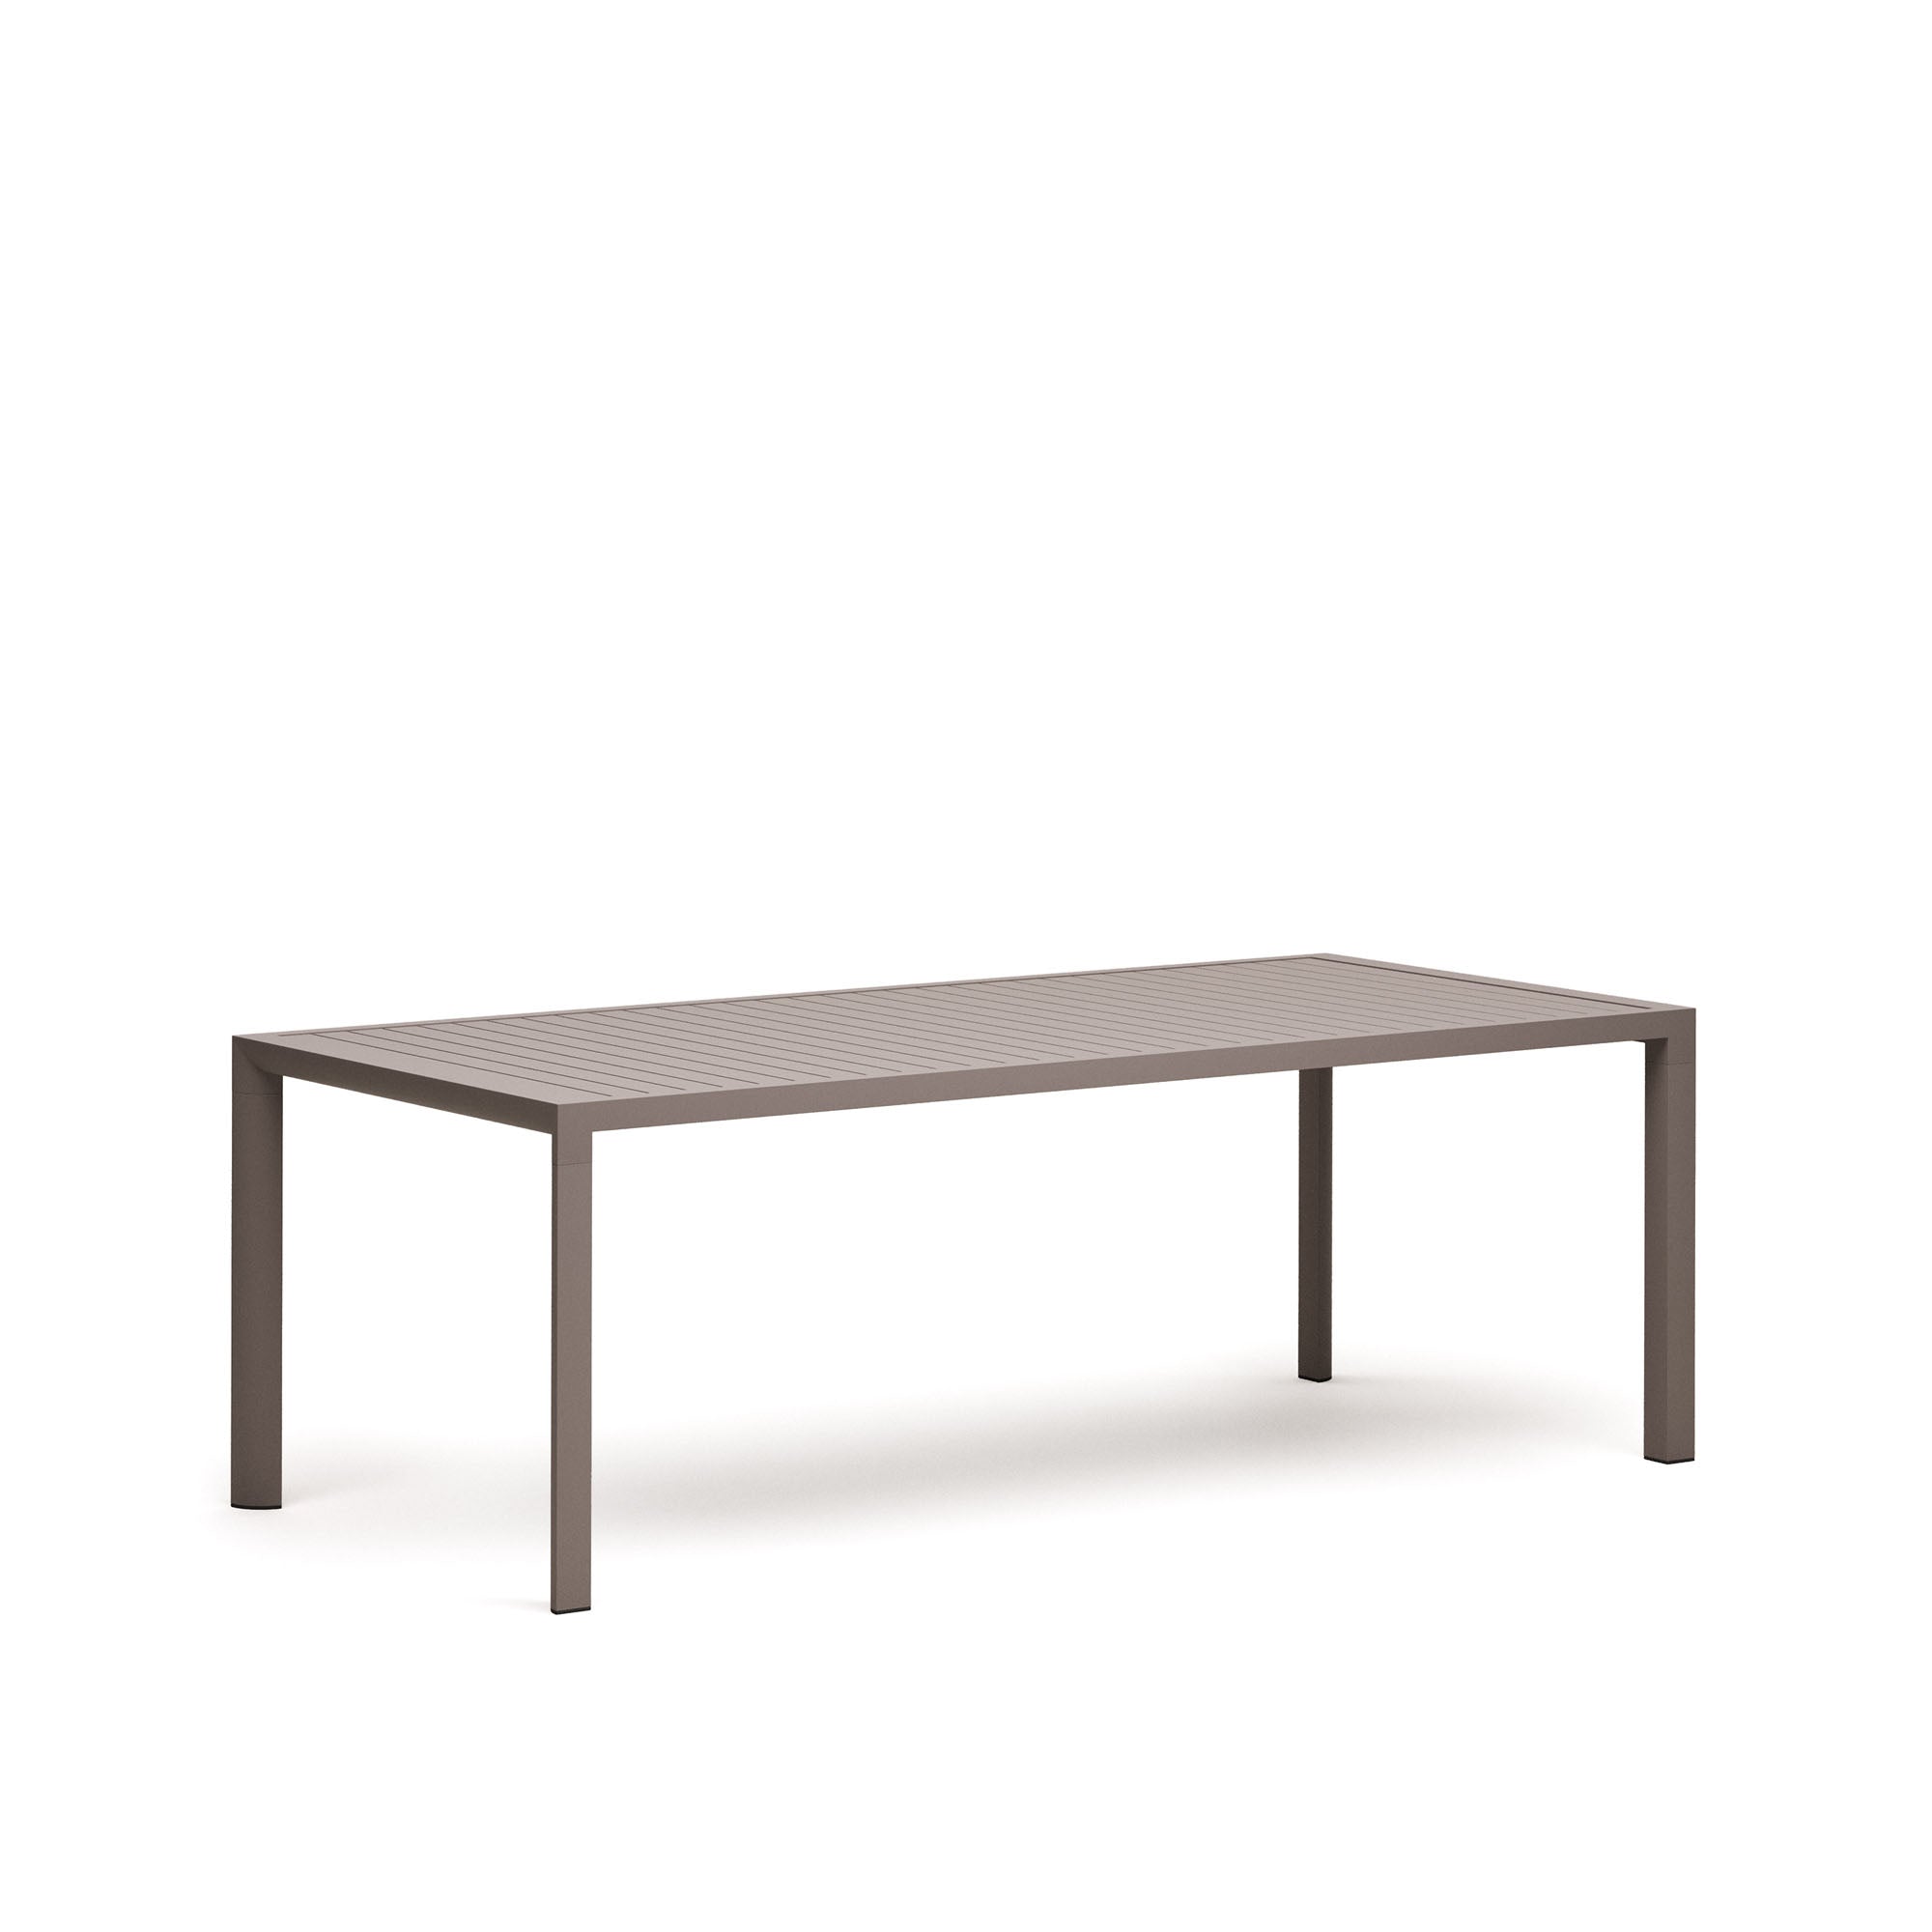 Culip alumínium kültéri asztal, barna színű porszórt bevonattal, 220 x 100 cm